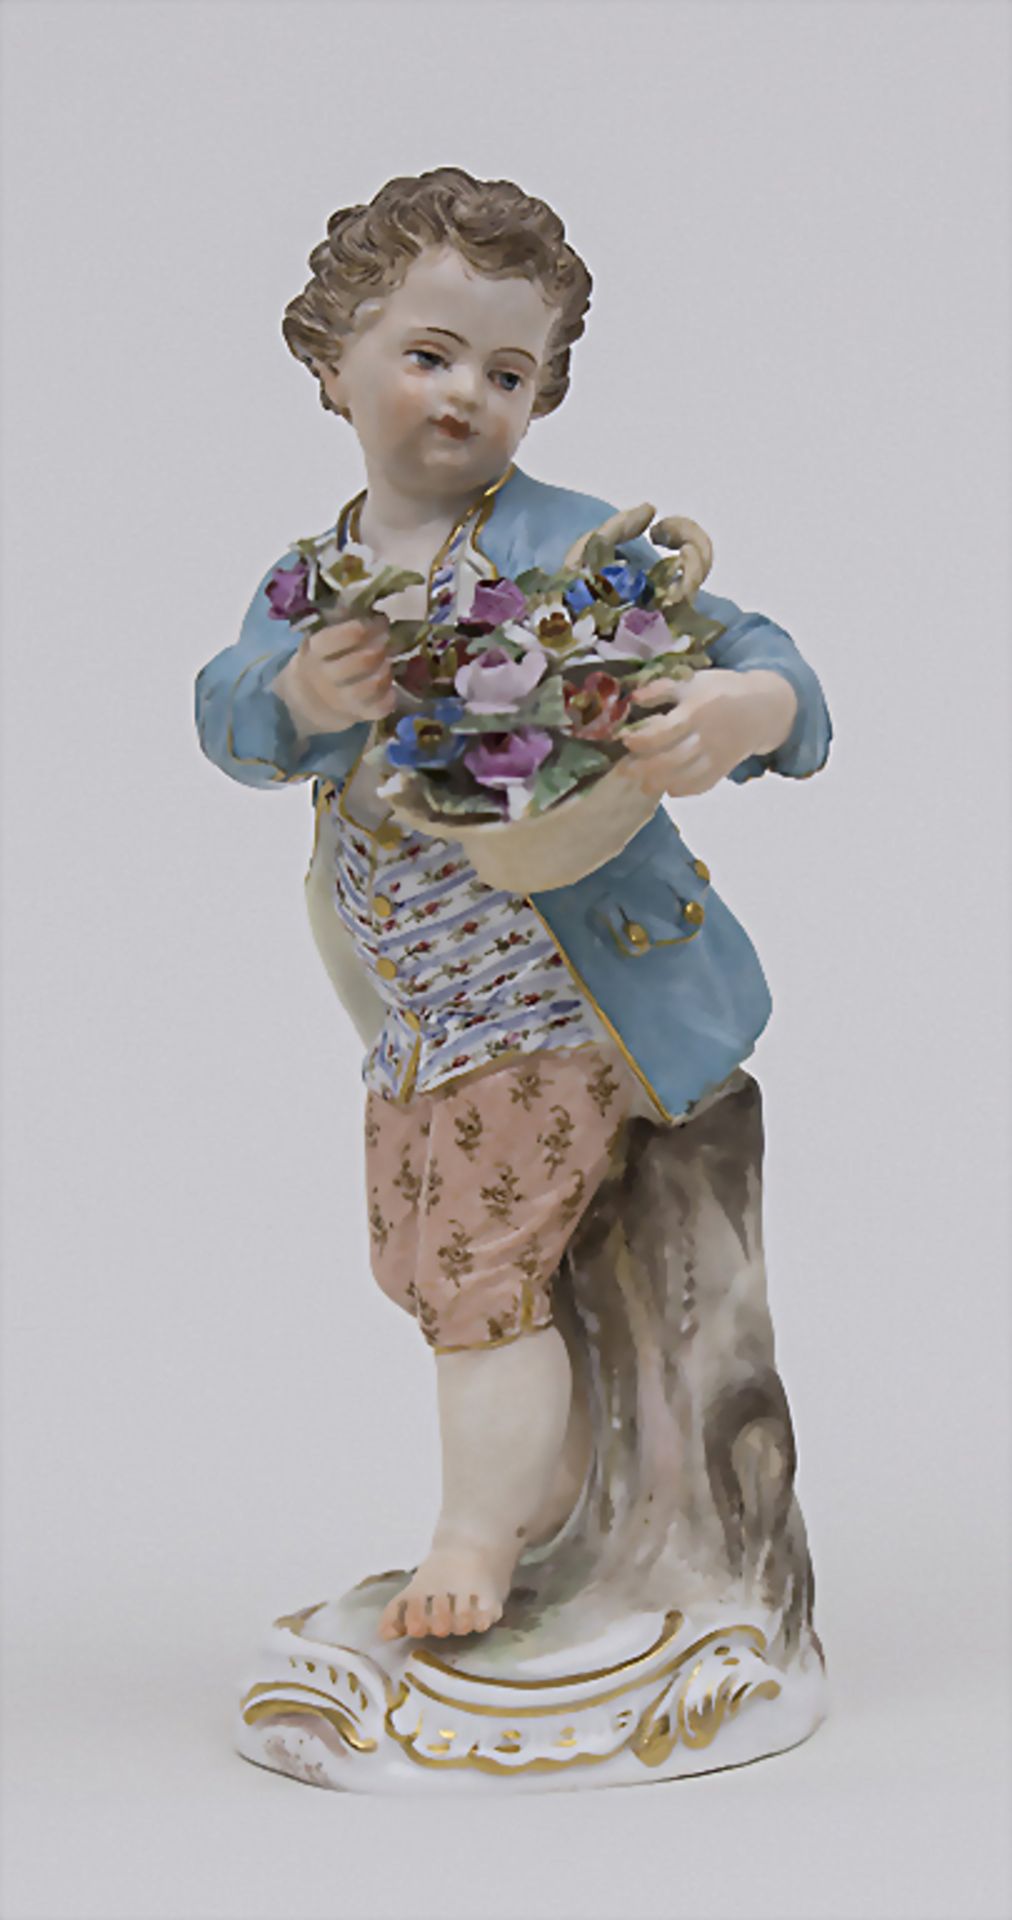 Gärtnerkind 'Junge mit Blumenkorb' / A gardener's child 'boy with flower basket', Meissen, Mitt